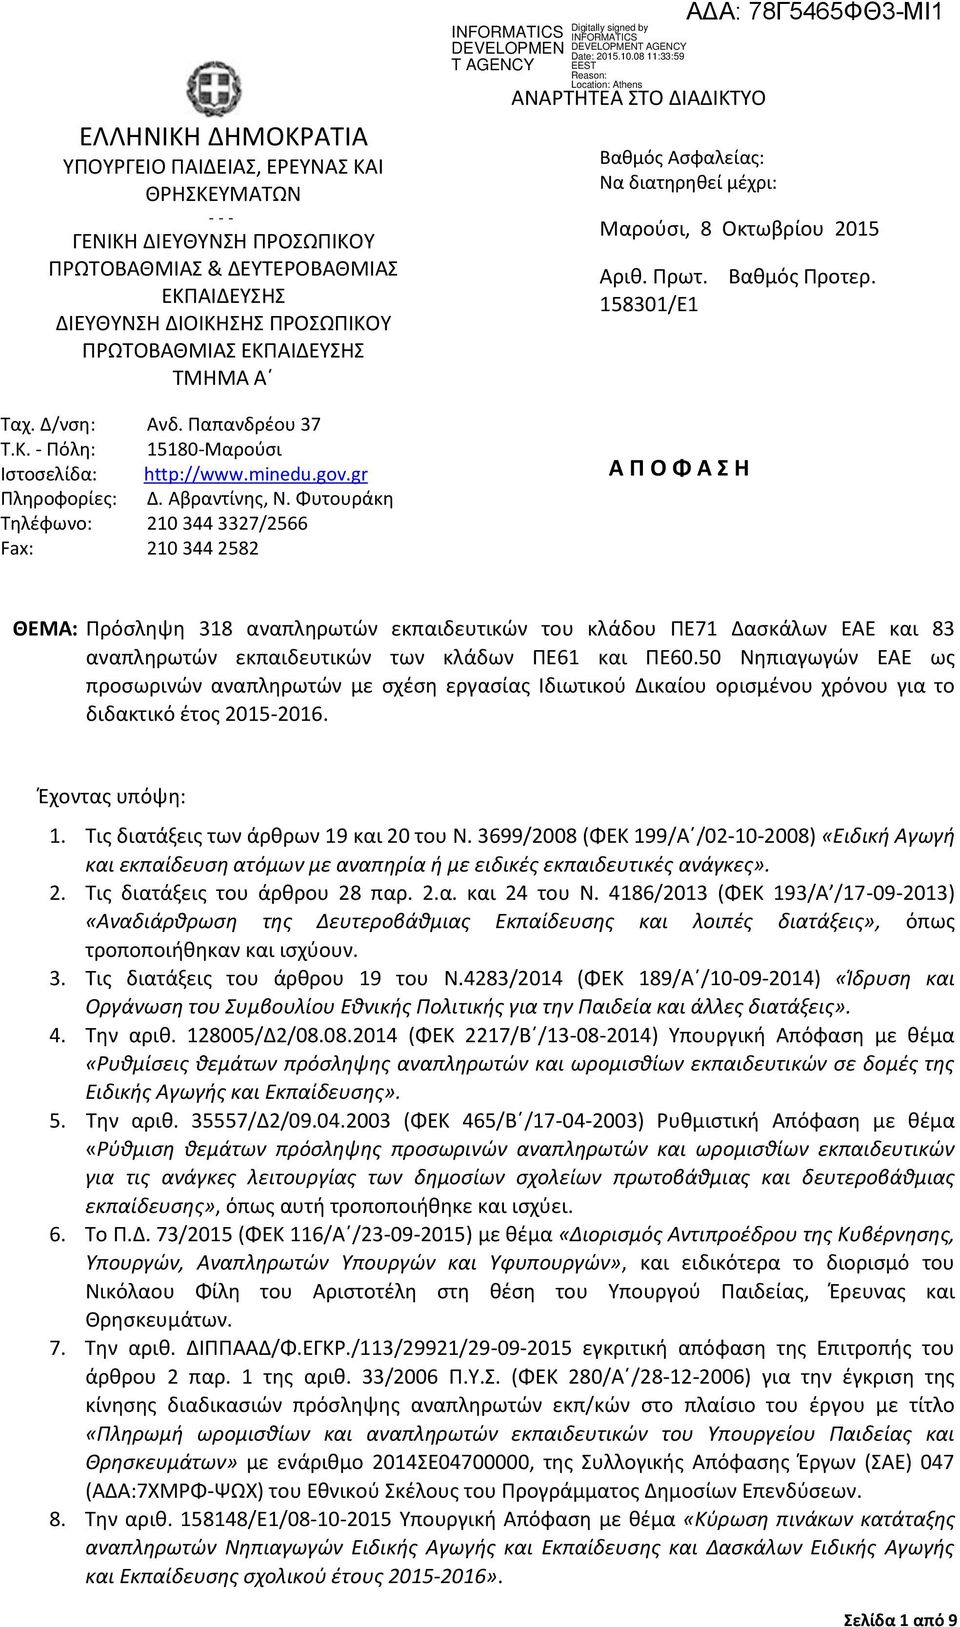 minedu.gov.gr Πληροφορίες: Δ. Αβραντίνης, Ν.